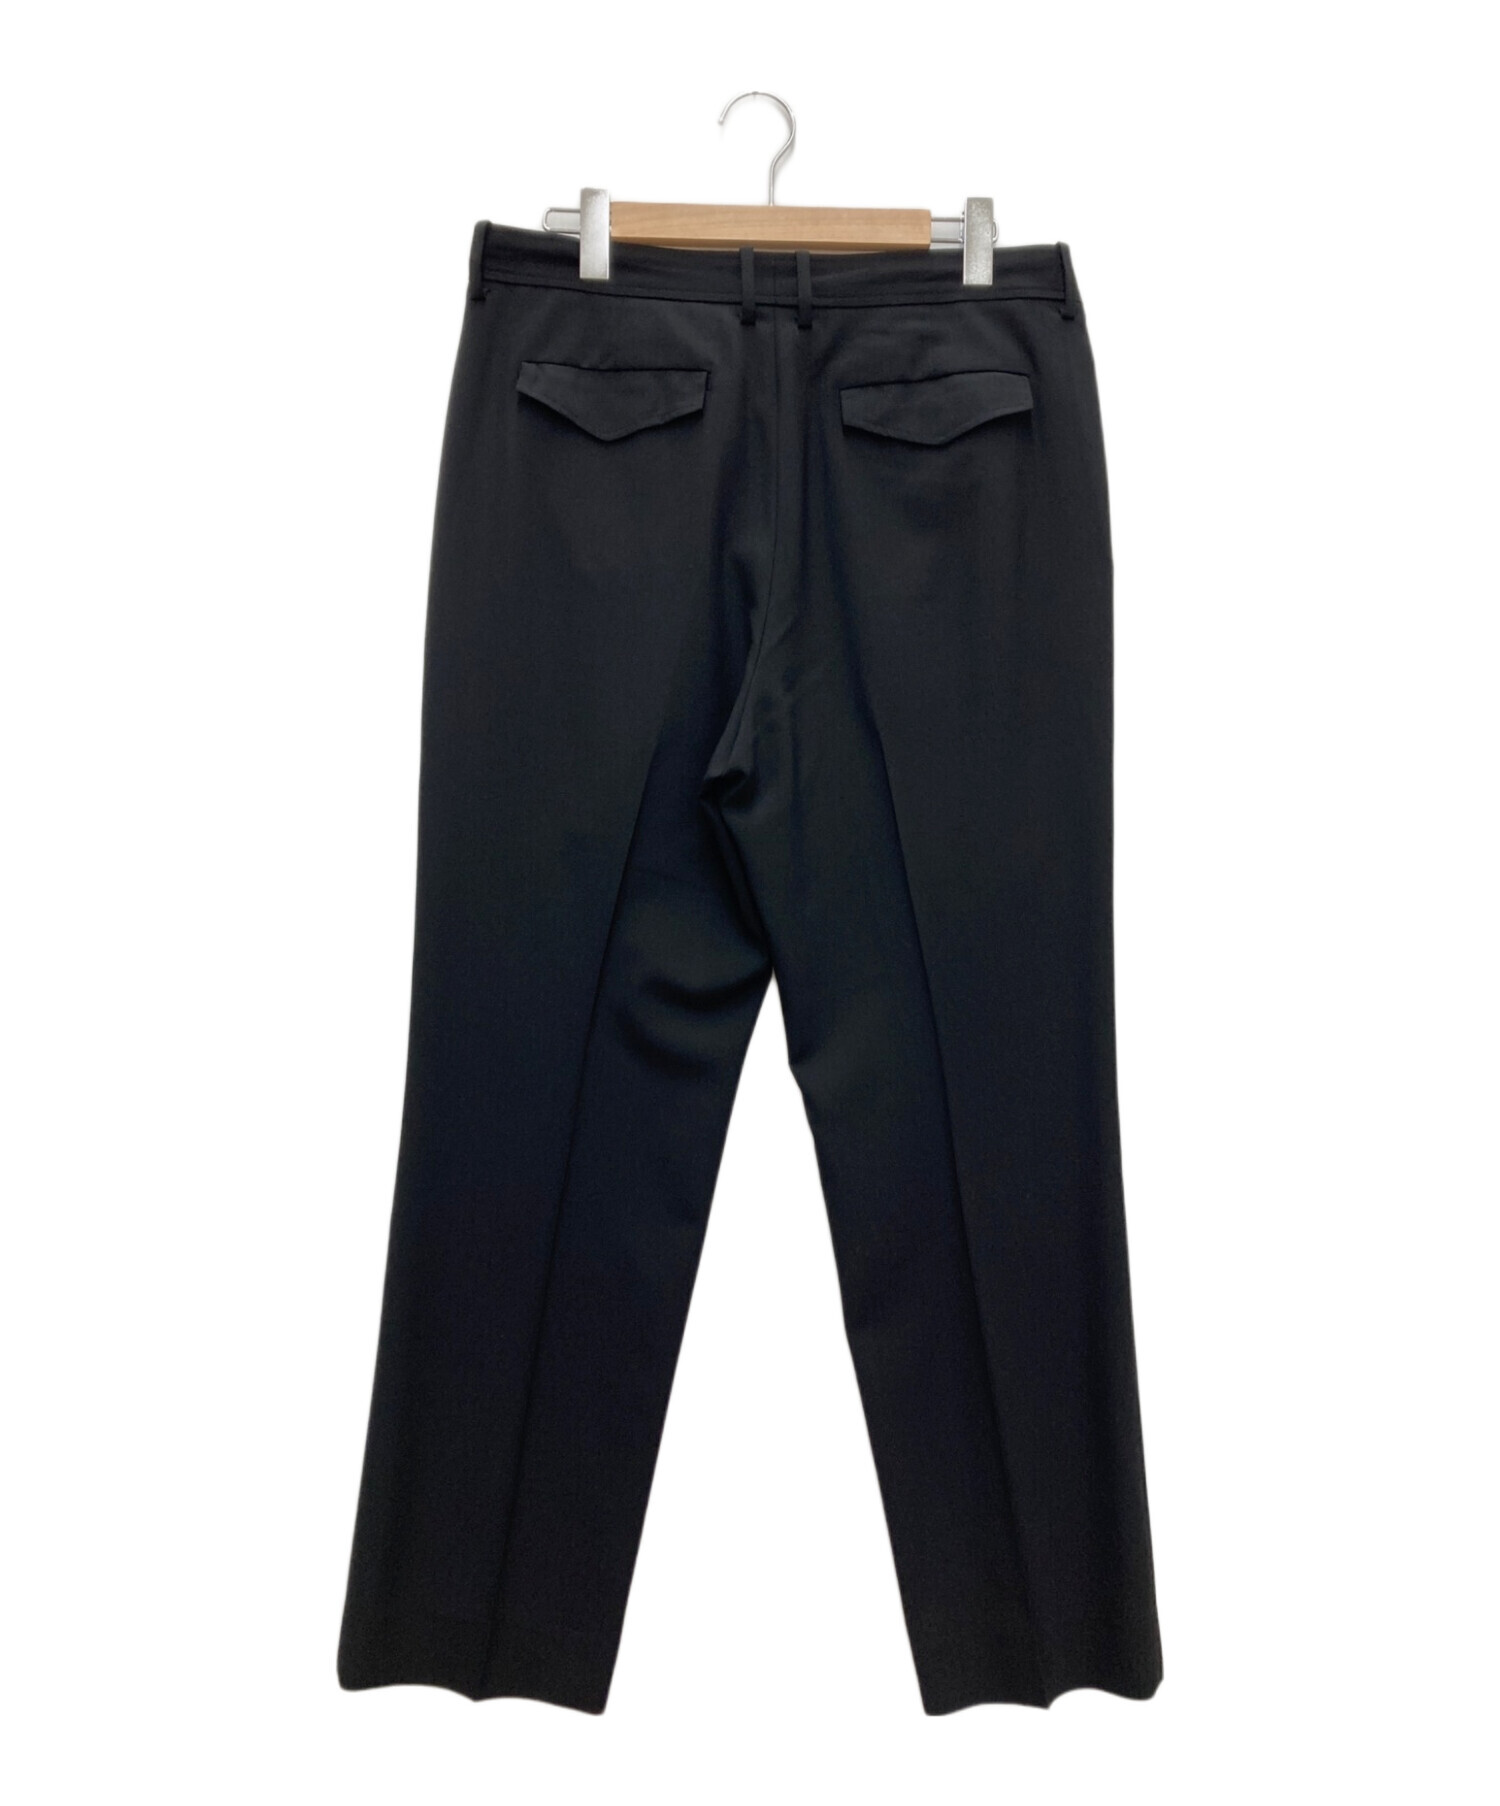 UNION LAUNCH (ユニオンランチ) Ron Herman (ロンハーマン) Tropical Fabric Trousers ブラック  サイズ:L